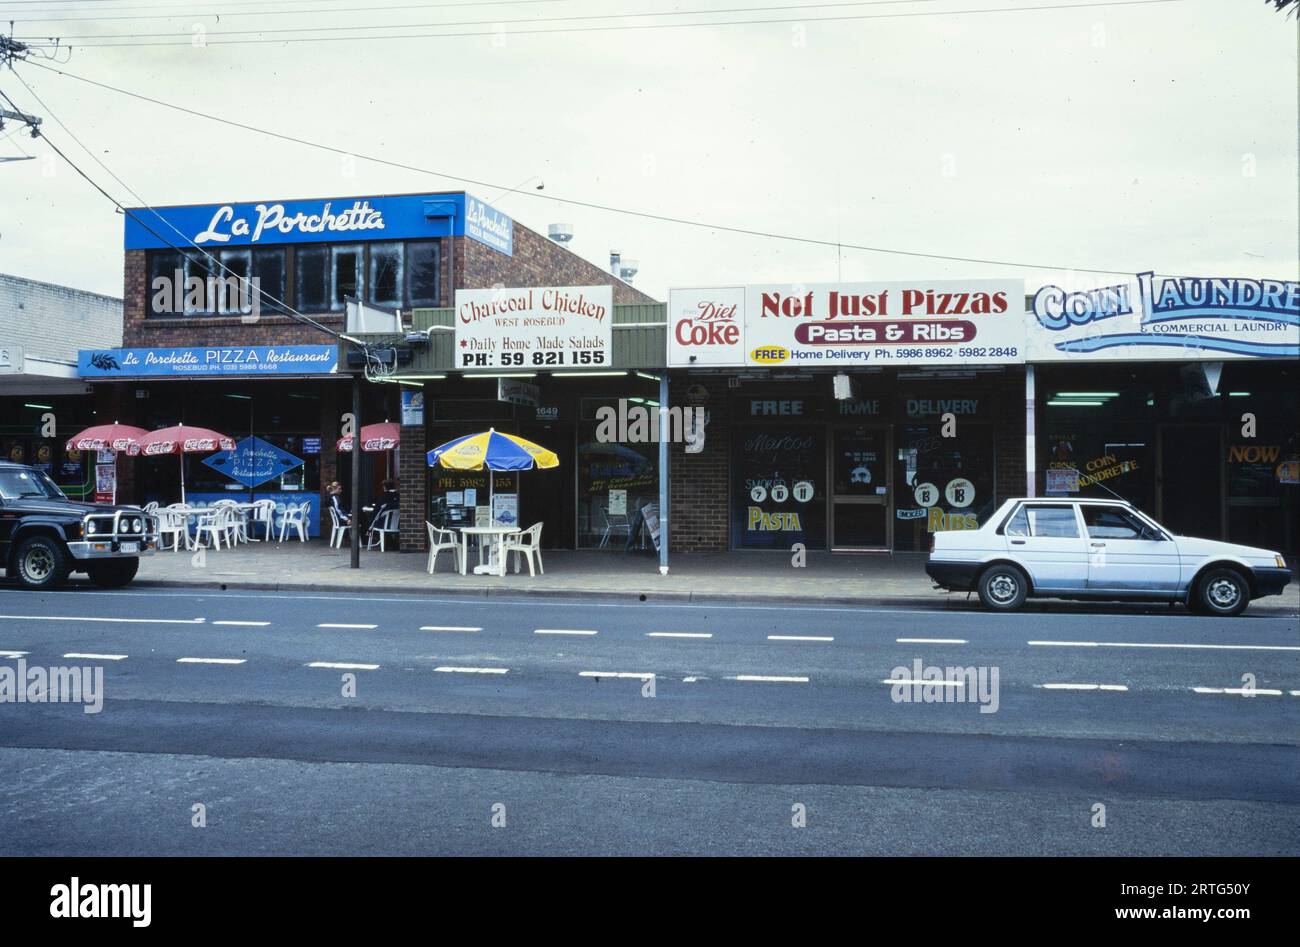 Melbourne, Australie décembre 1999 : cliché emblématique du paysage urbain de Melbourne dans les années 1990, mettant en valeur son dynamisme architectural et urbain. Banque D'Images